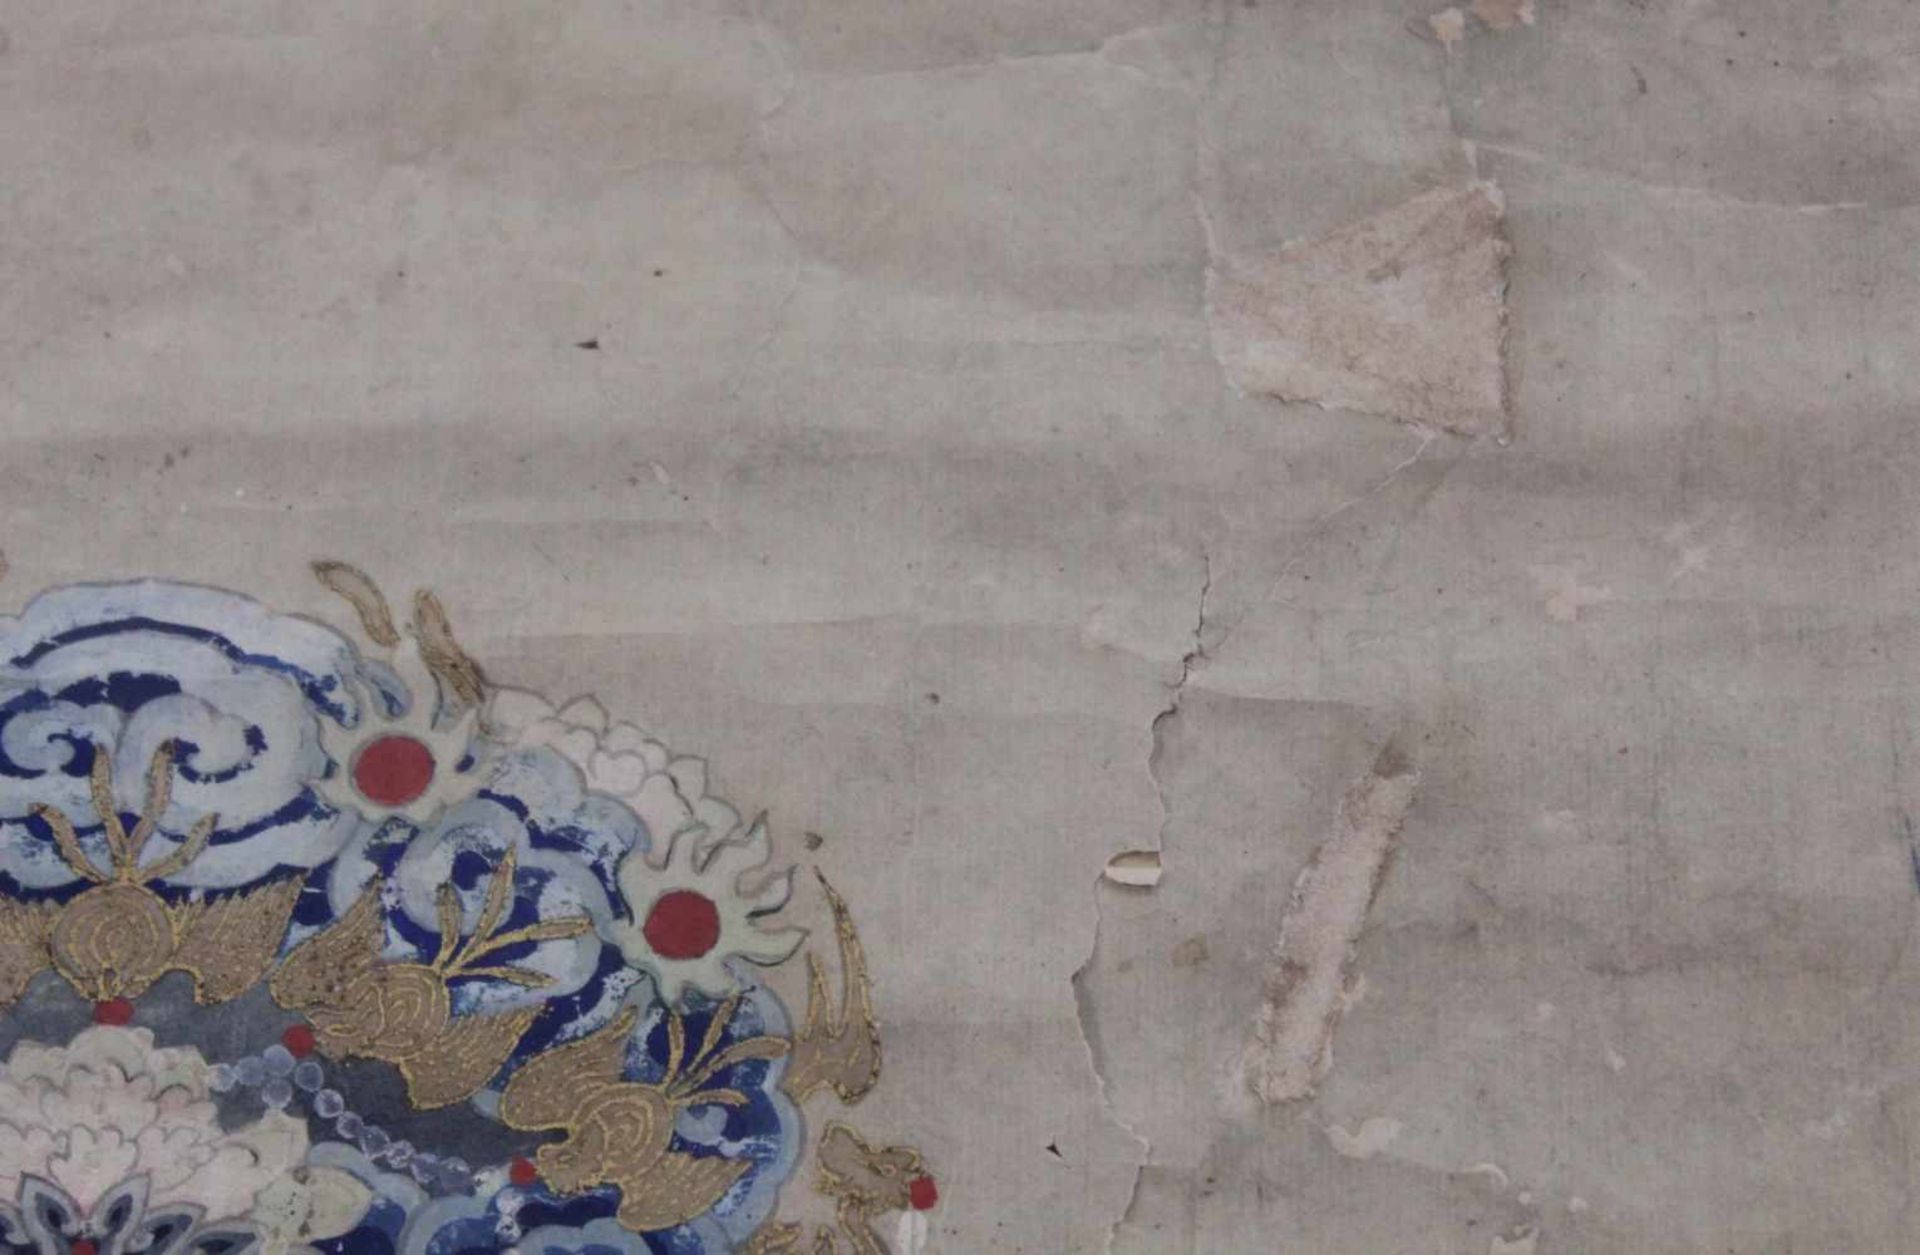 Ahnenbild. Ein Beamter und eine Frau. China.120 cm x 80 cm. Aquarell / Guache auf Papier, gemalt. - Bild 7 aus 9